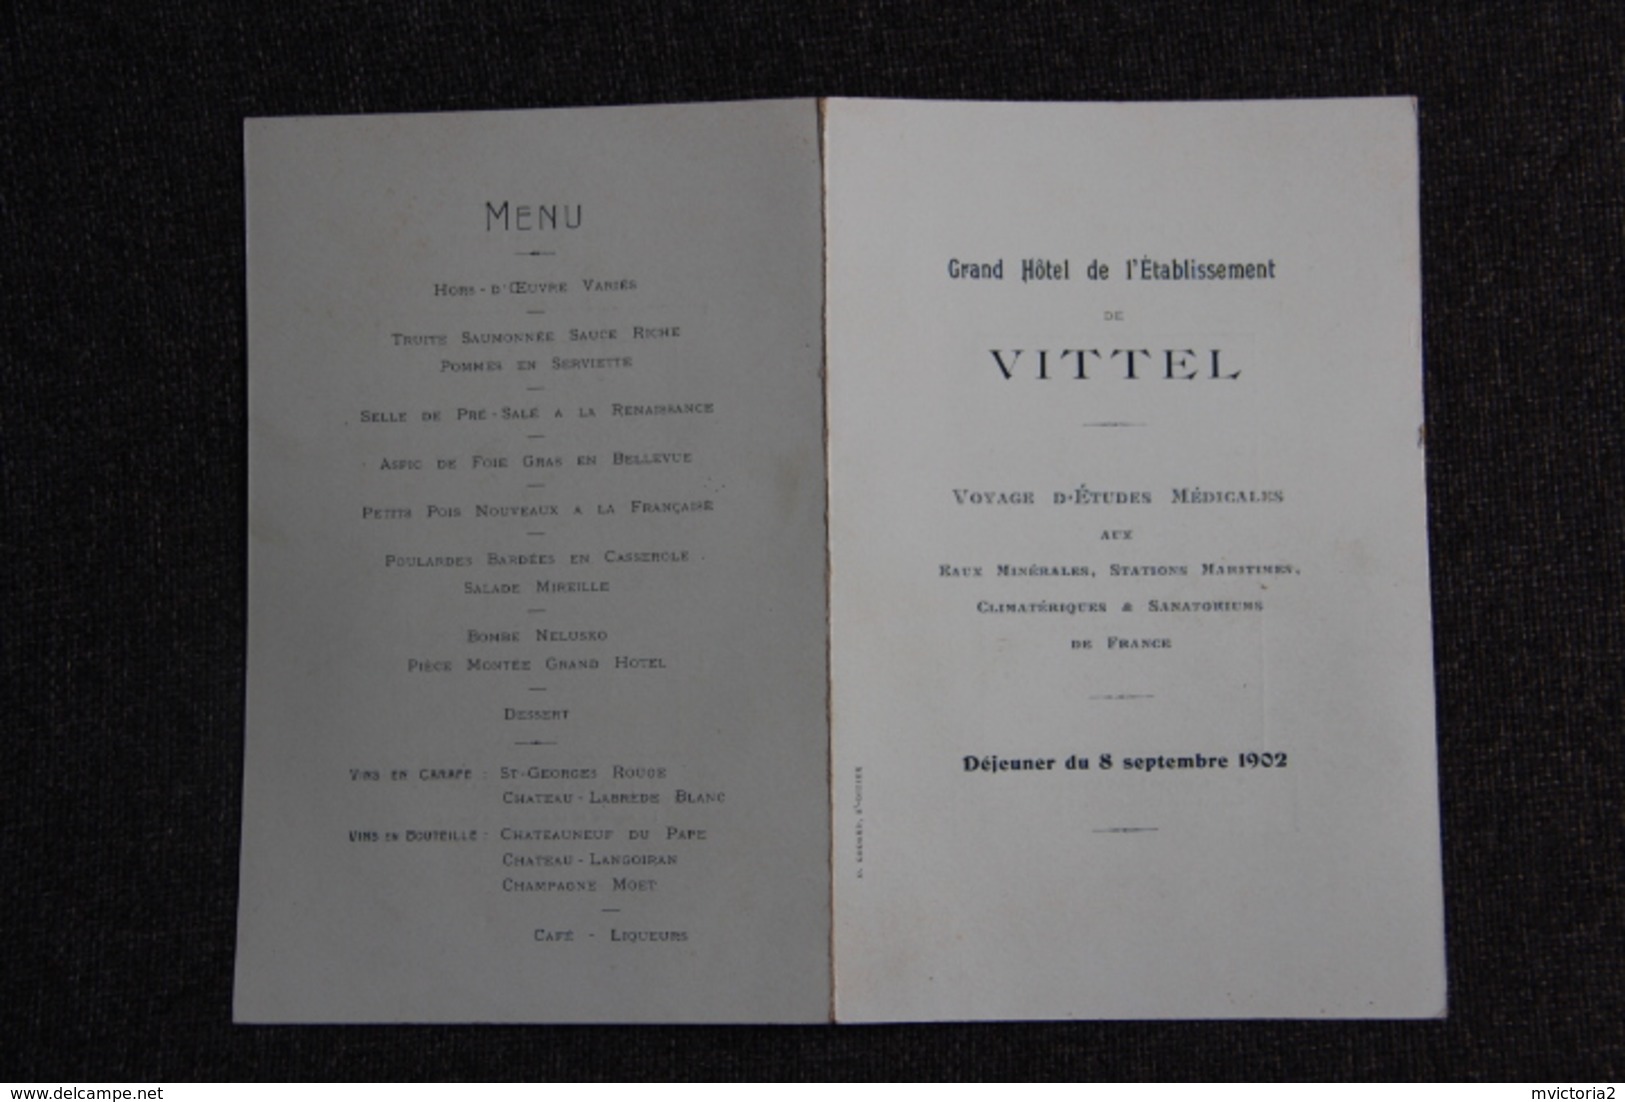 VITTEL - Très Beau Menu Pliant, Publicitaire, Servi Au Grand Hôtel De L'Etablissement De VITTEL, Le 8 Septembre 1902 - Menus